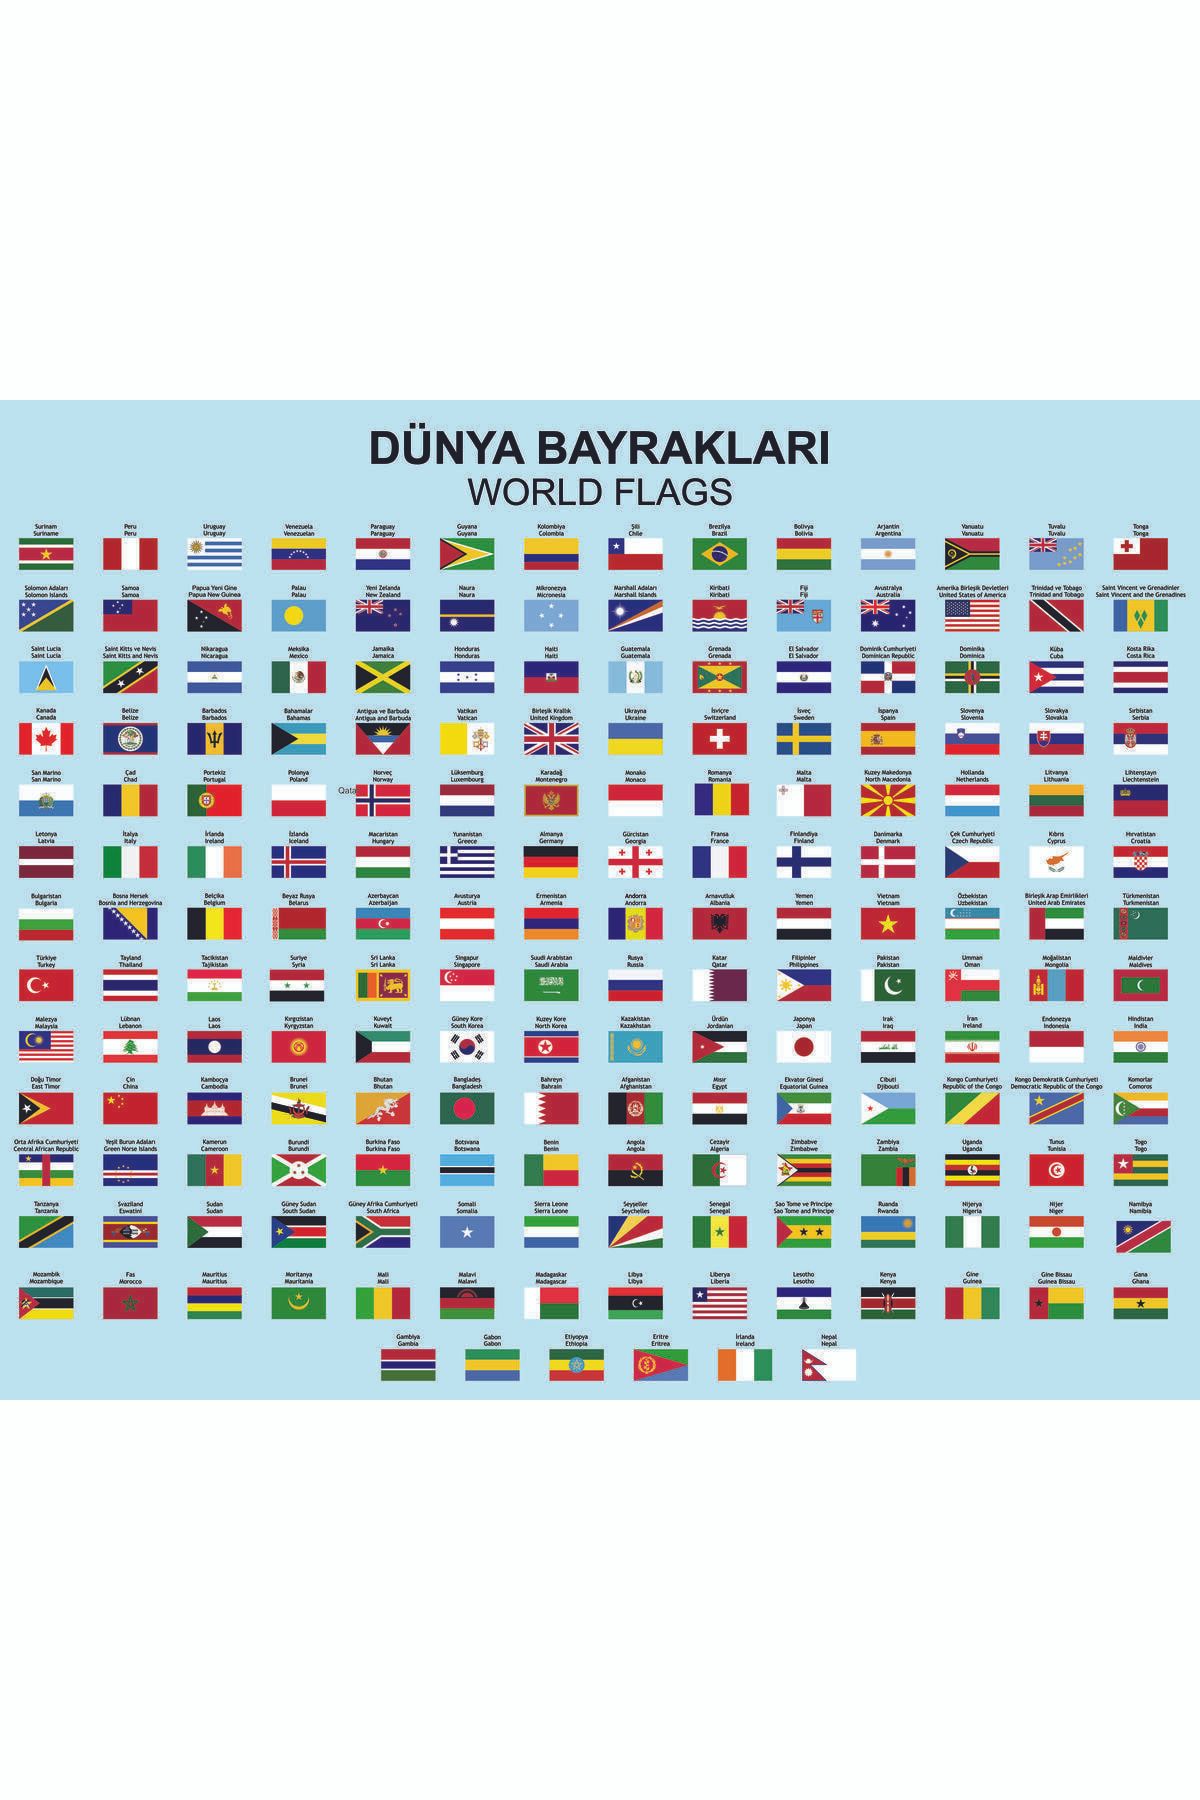 Master Dünya Bayrakları 188 Ülke Sticker (60x50cm)